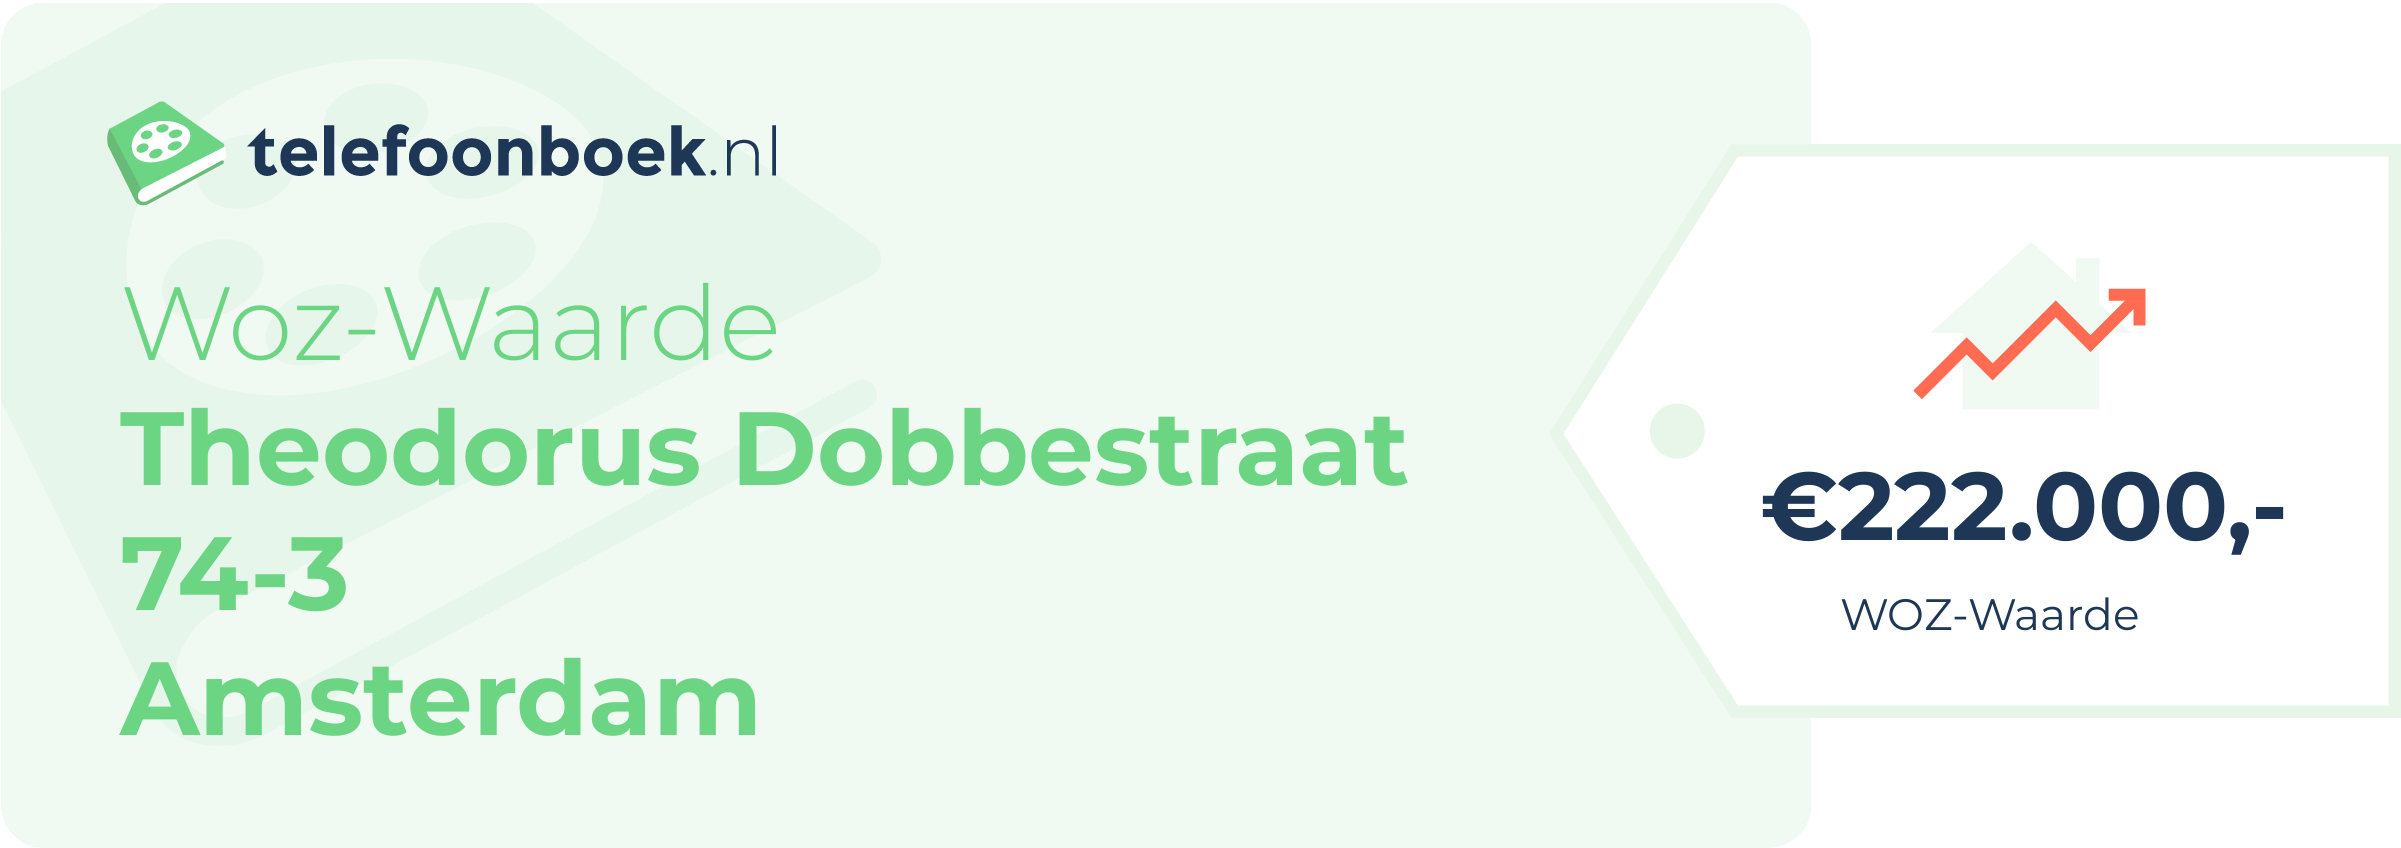 WOZ-waarde Theodorus Dobbestraat 74-3 Amsterdam